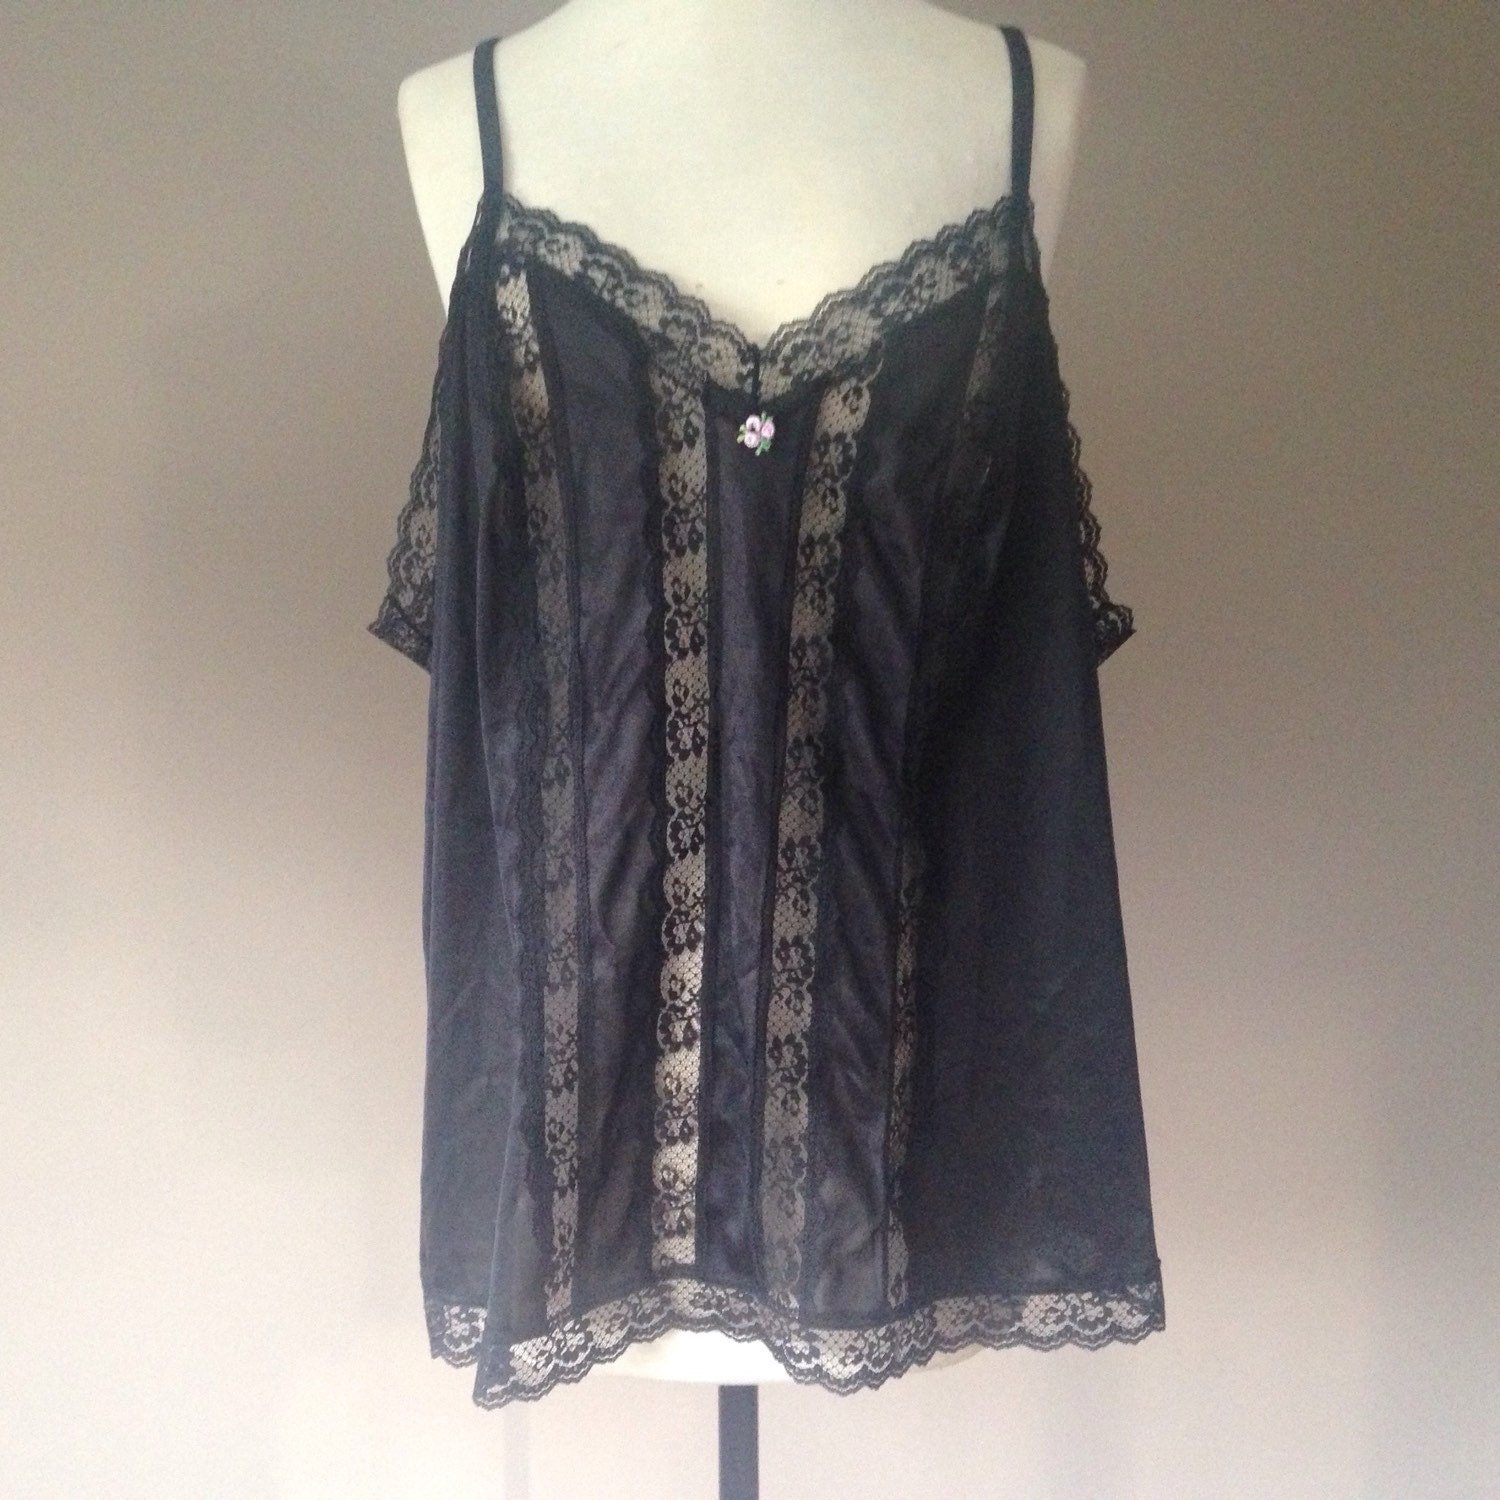 4X / Nylon Cami with Black Lace / Vintage Plus Size Lingerie